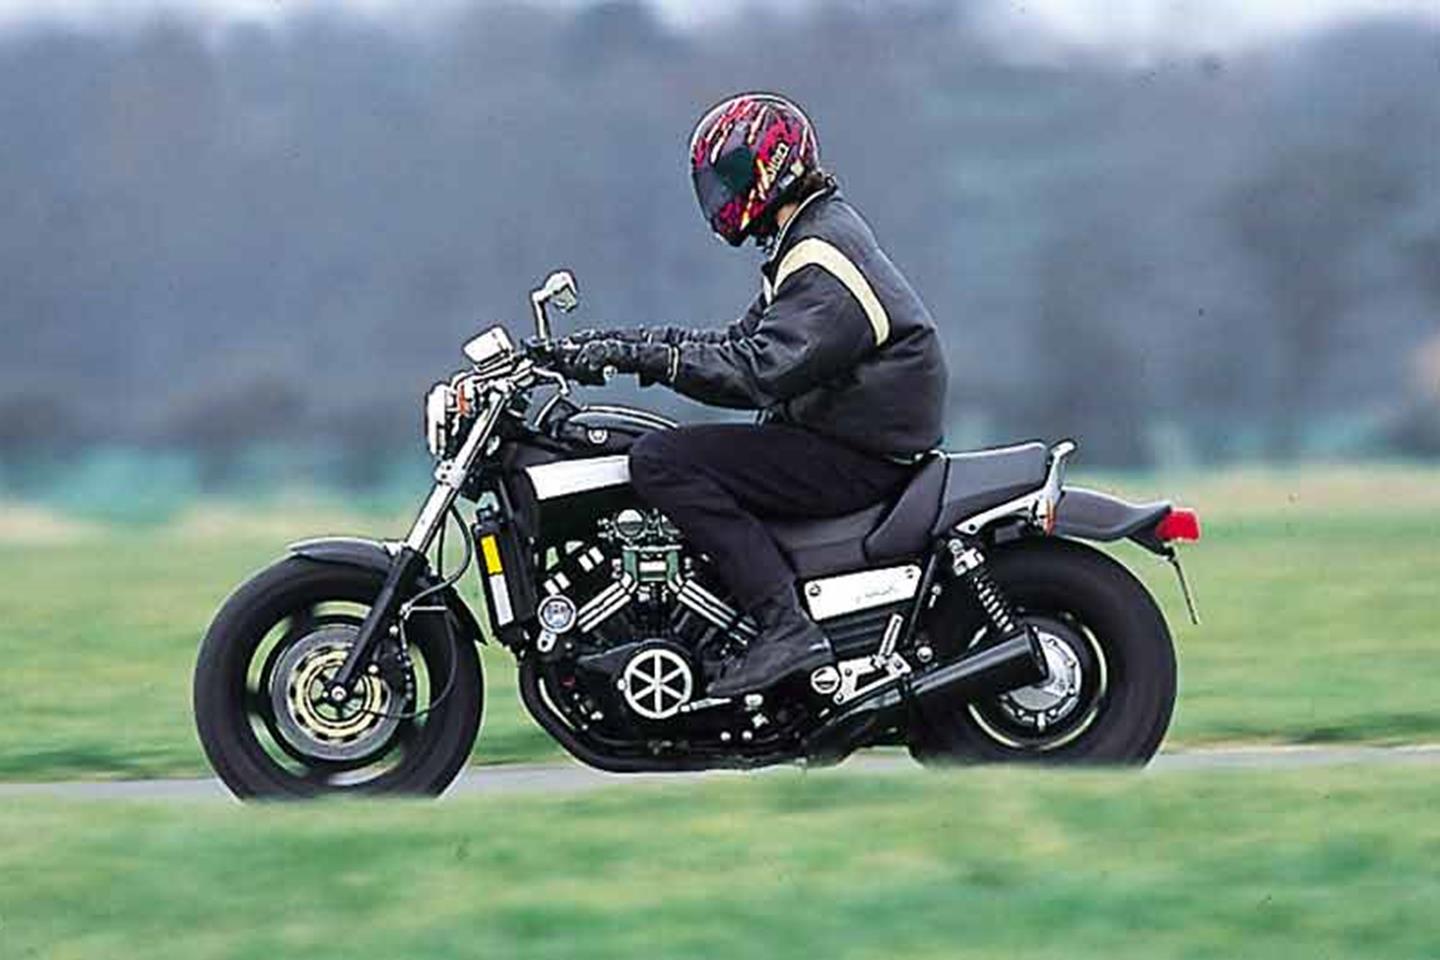 FZR 600 1990-1999 MC Front Rear Brake Pads For Yamaha V-Max 12 Vmax 1993-2007